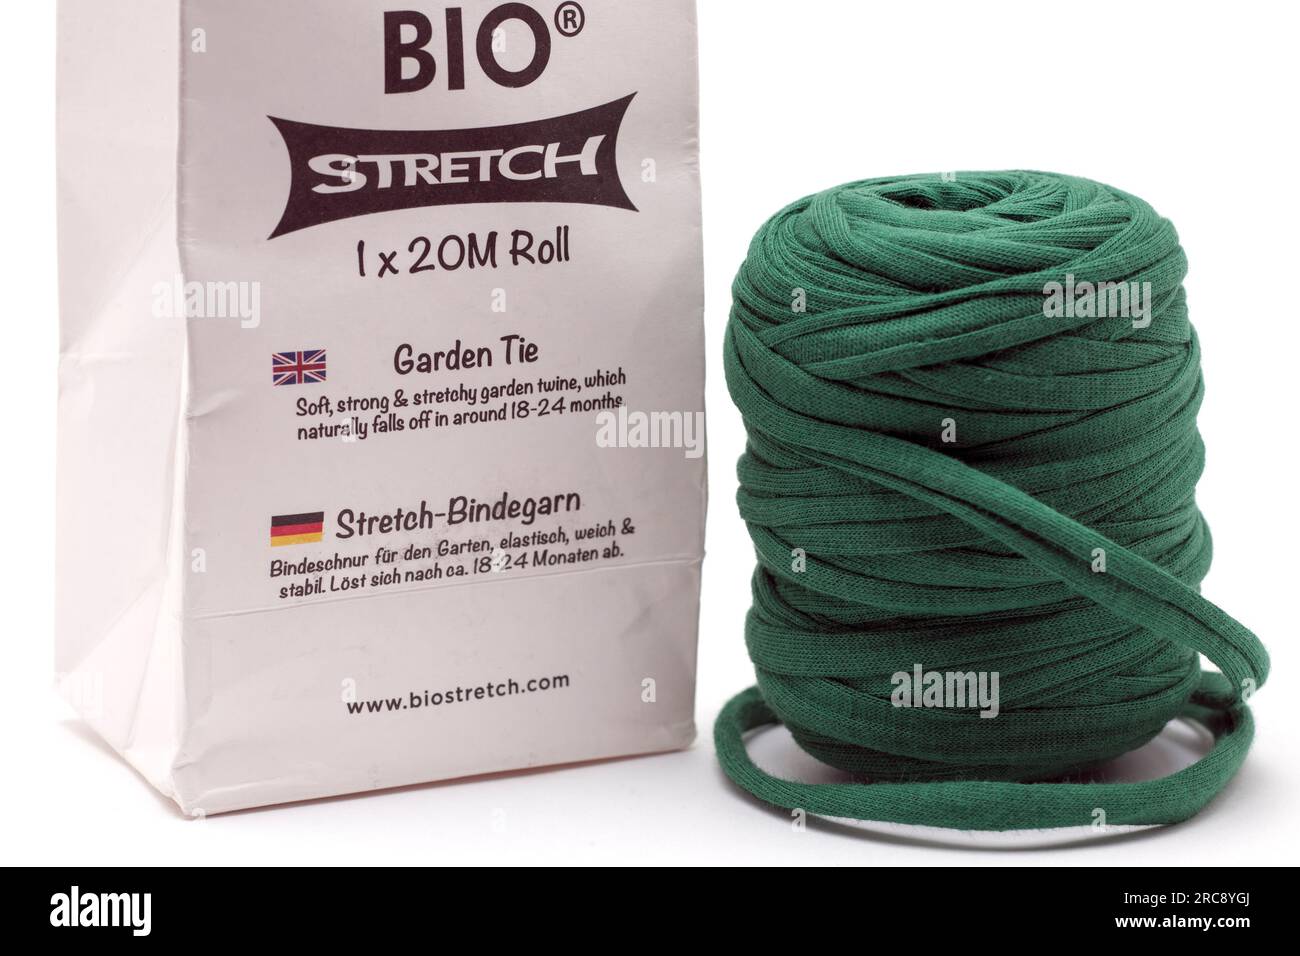 1-20 Meter lange Rolle Bio Stretch Garden Krawatte zum Pfählen von Pflanzen Stockfoto